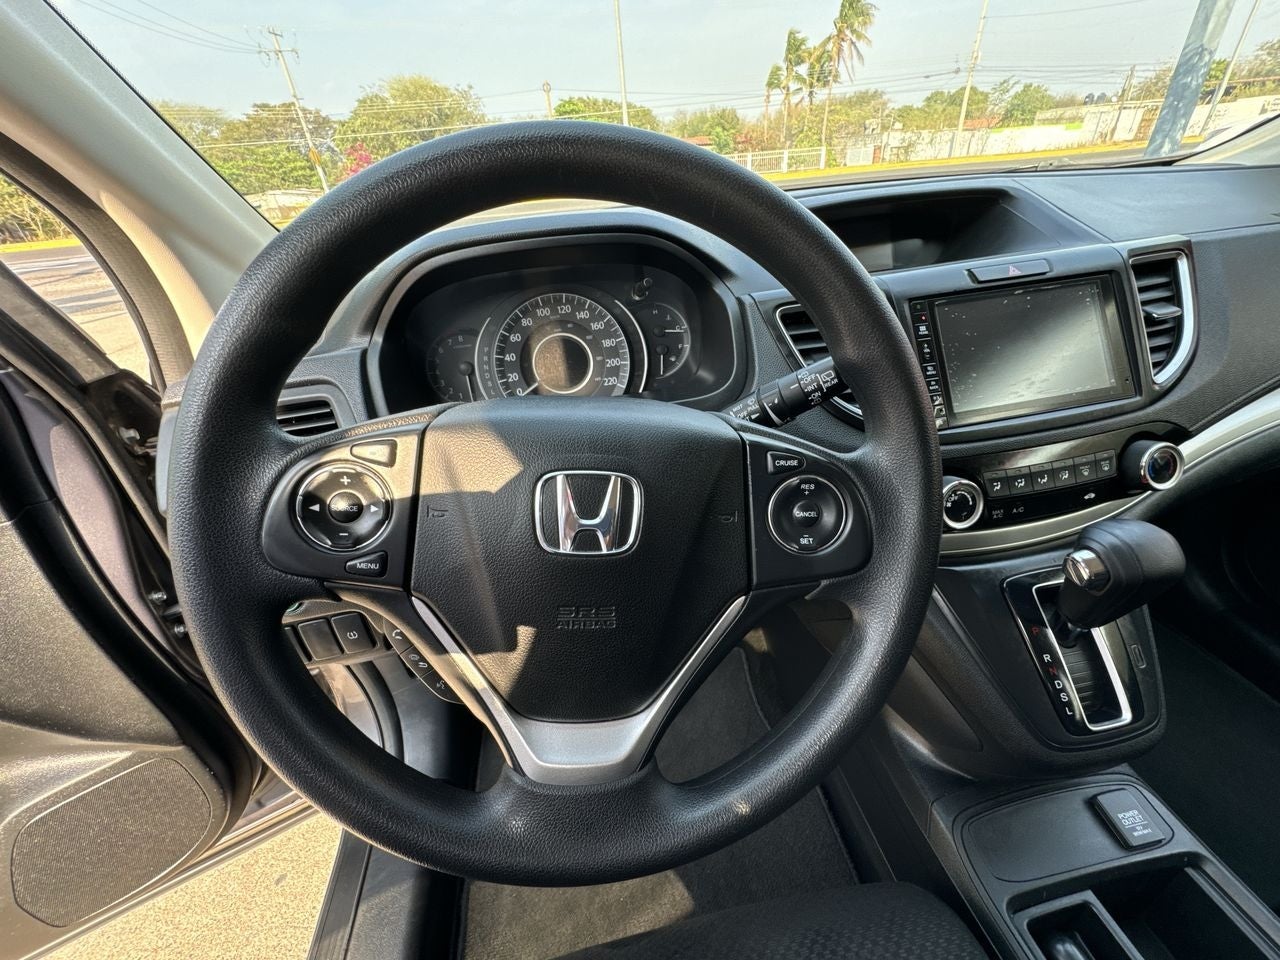 2016 Honda CR-V 2.4 I-style At